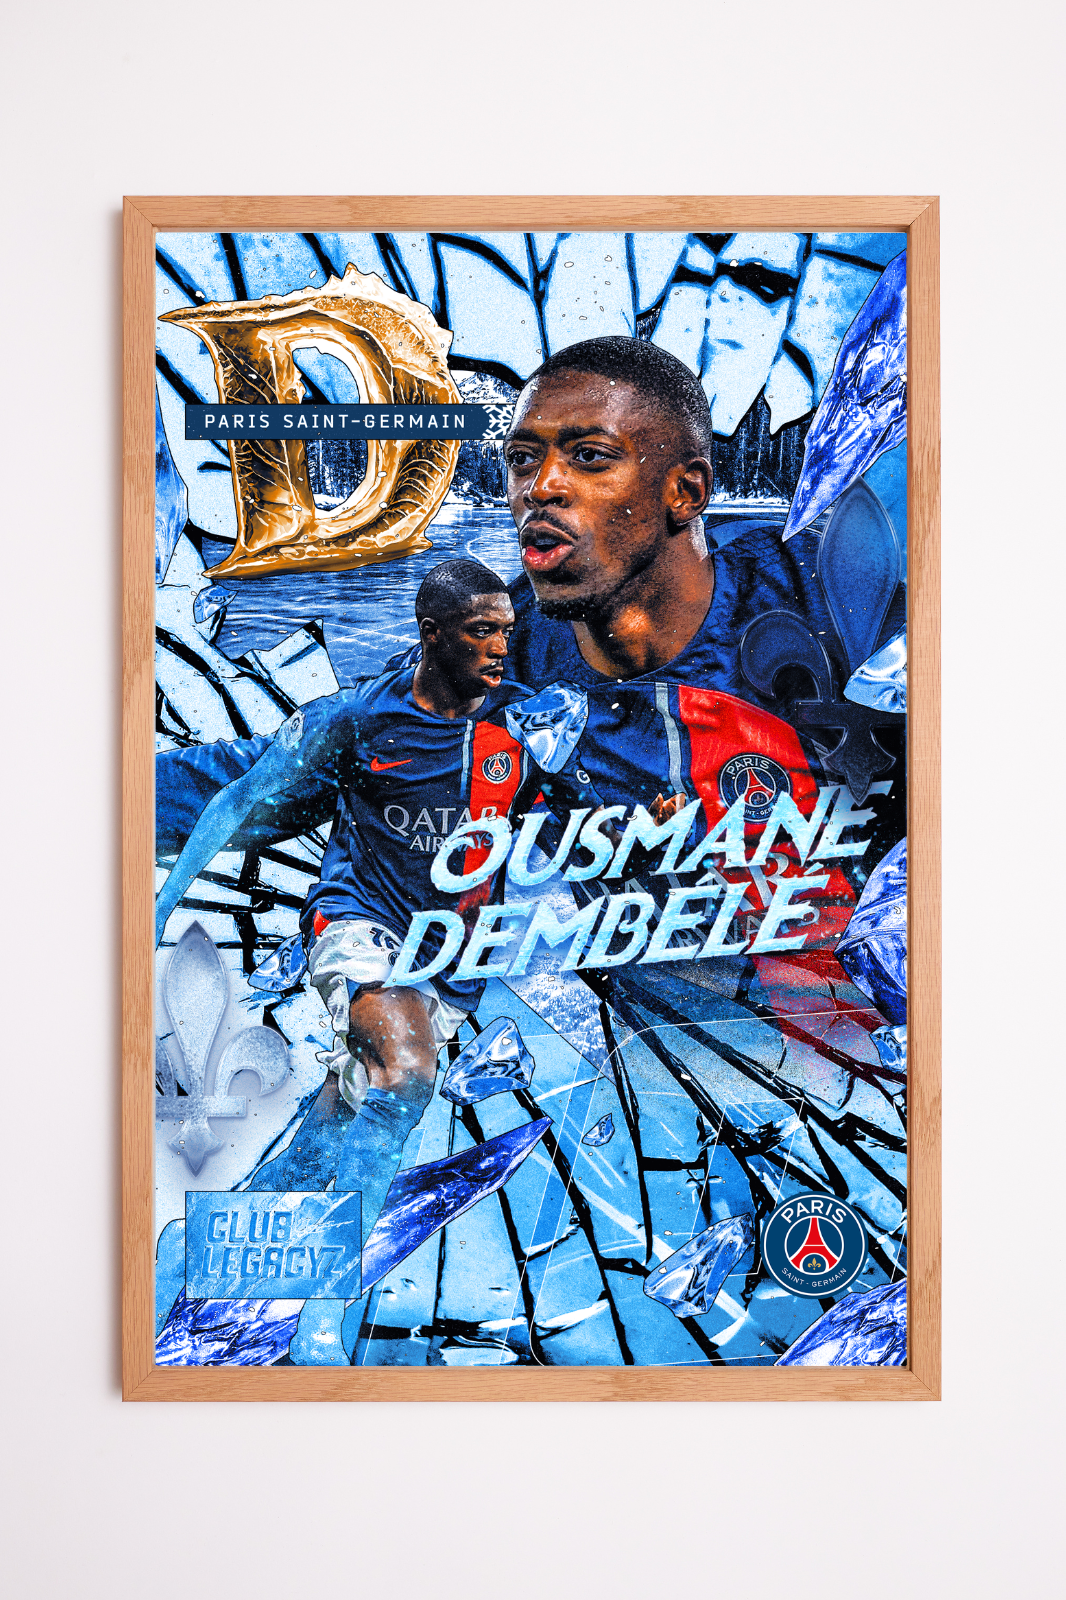 Paris Saint-Germain - Ousmane Dembélé Frozen Poster limited to 100